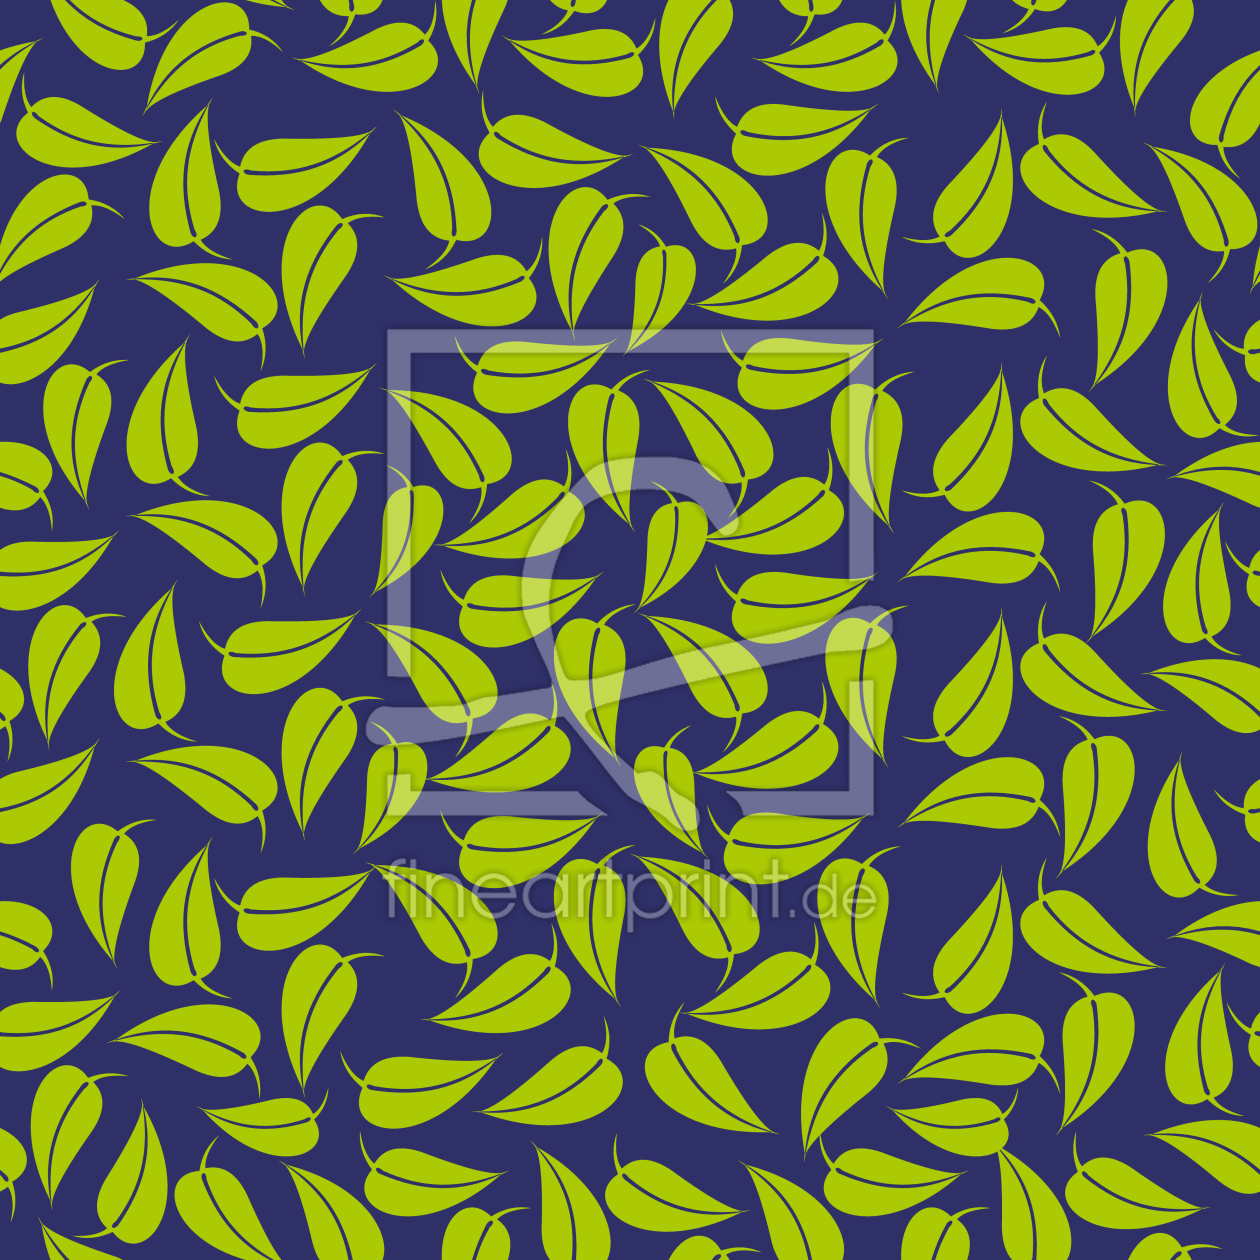 Bild-Nr.: 9008539 Zitronenblatt erstellt von patterndesigns-com